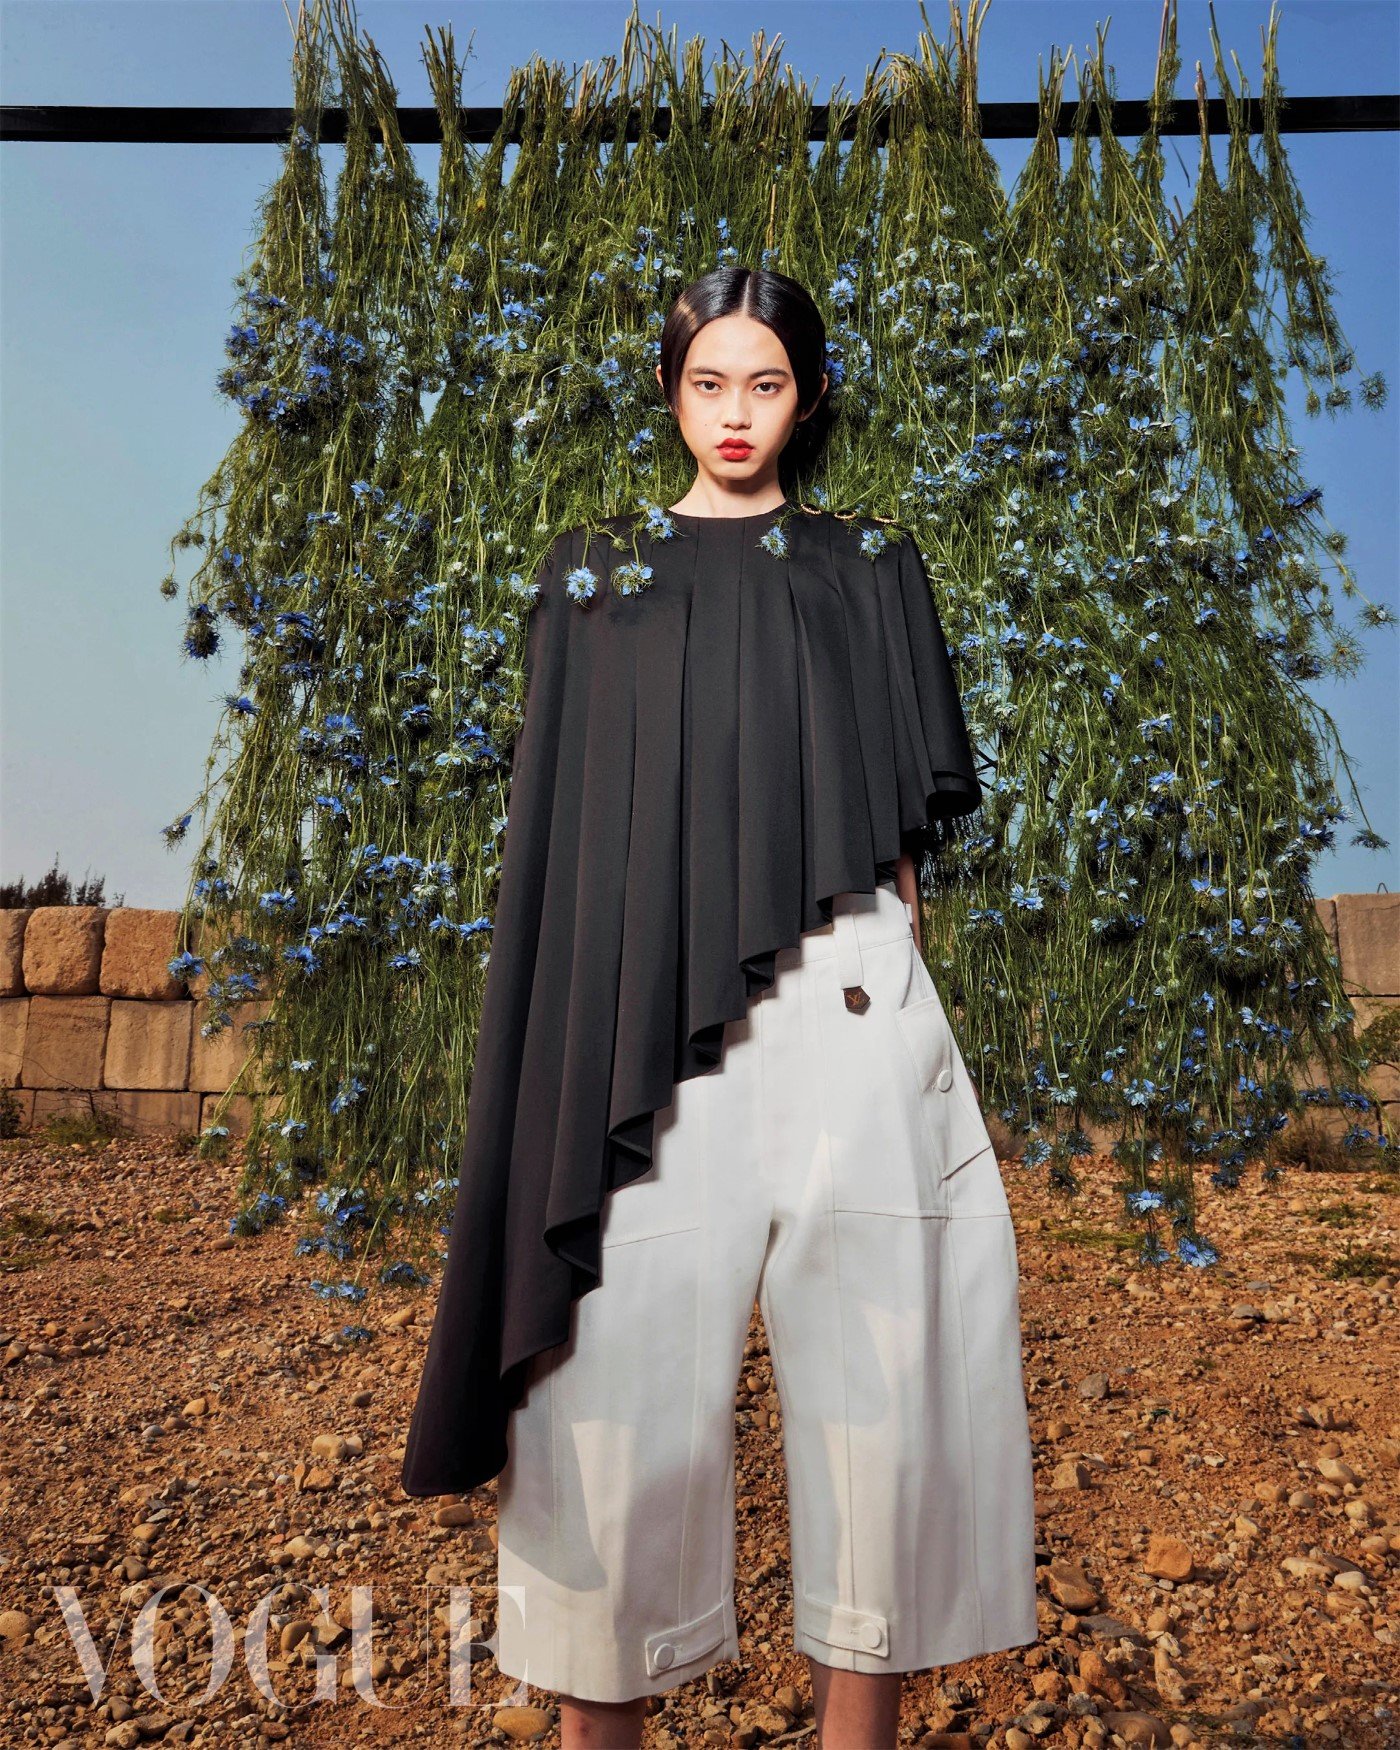 Zoe-Fang-by-Hedy-Chang-Vogue-Taiwan-April (12).jpg